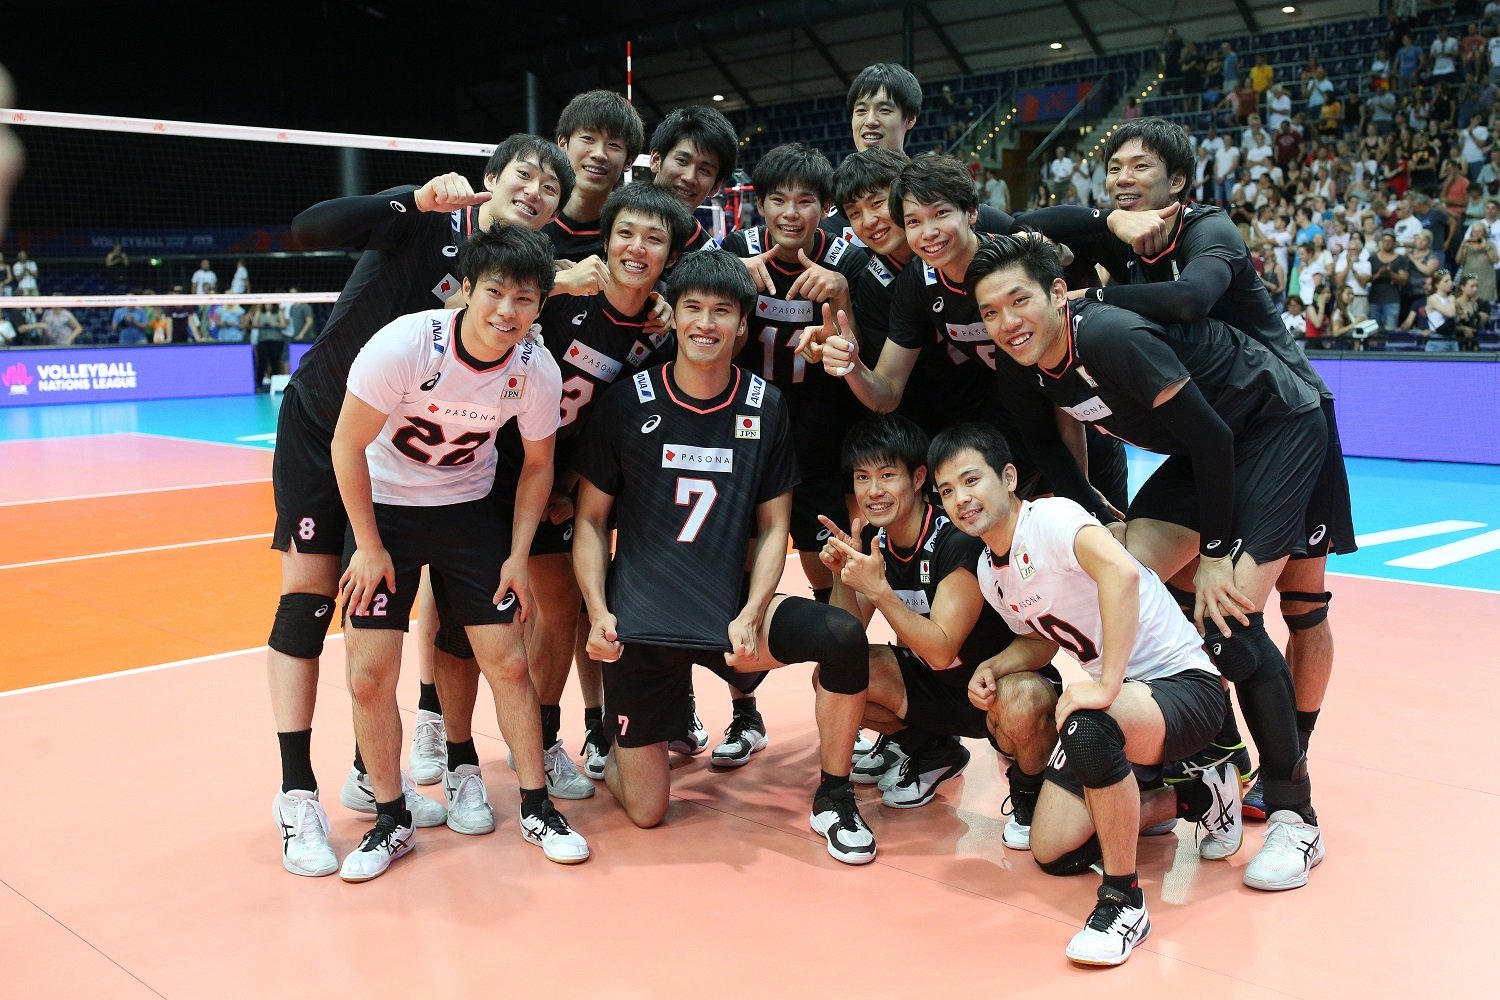 Япония волейбол мужчины. Либеро сборной Японии по волейболу. Либеро сборной Японии по волейболу мужчины. Волейболисты сборной Японии. Либеро японской сборной по волейболу.